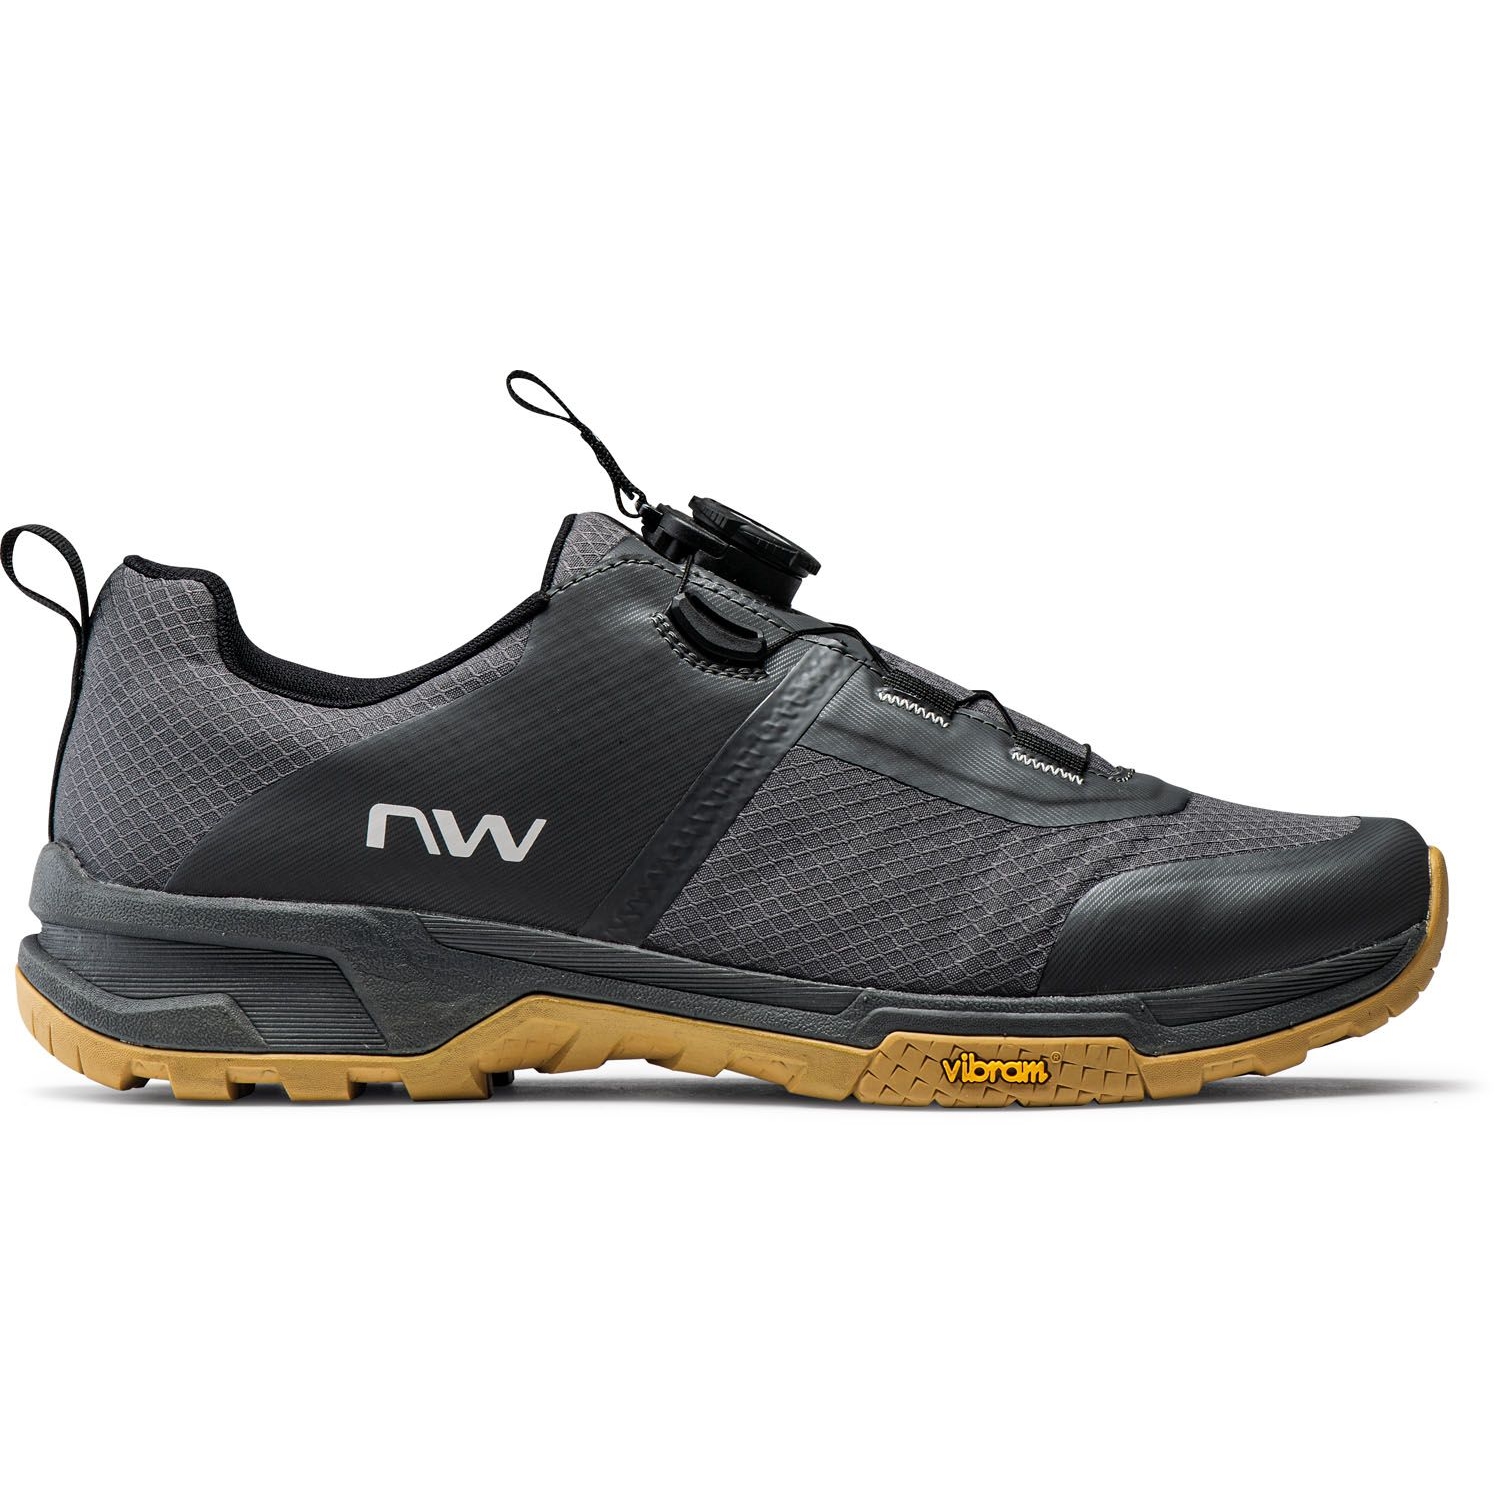 Produktbild von Northwave Crossland Plus Flat Pedal Schuhe Herren - dunkelgrau 89